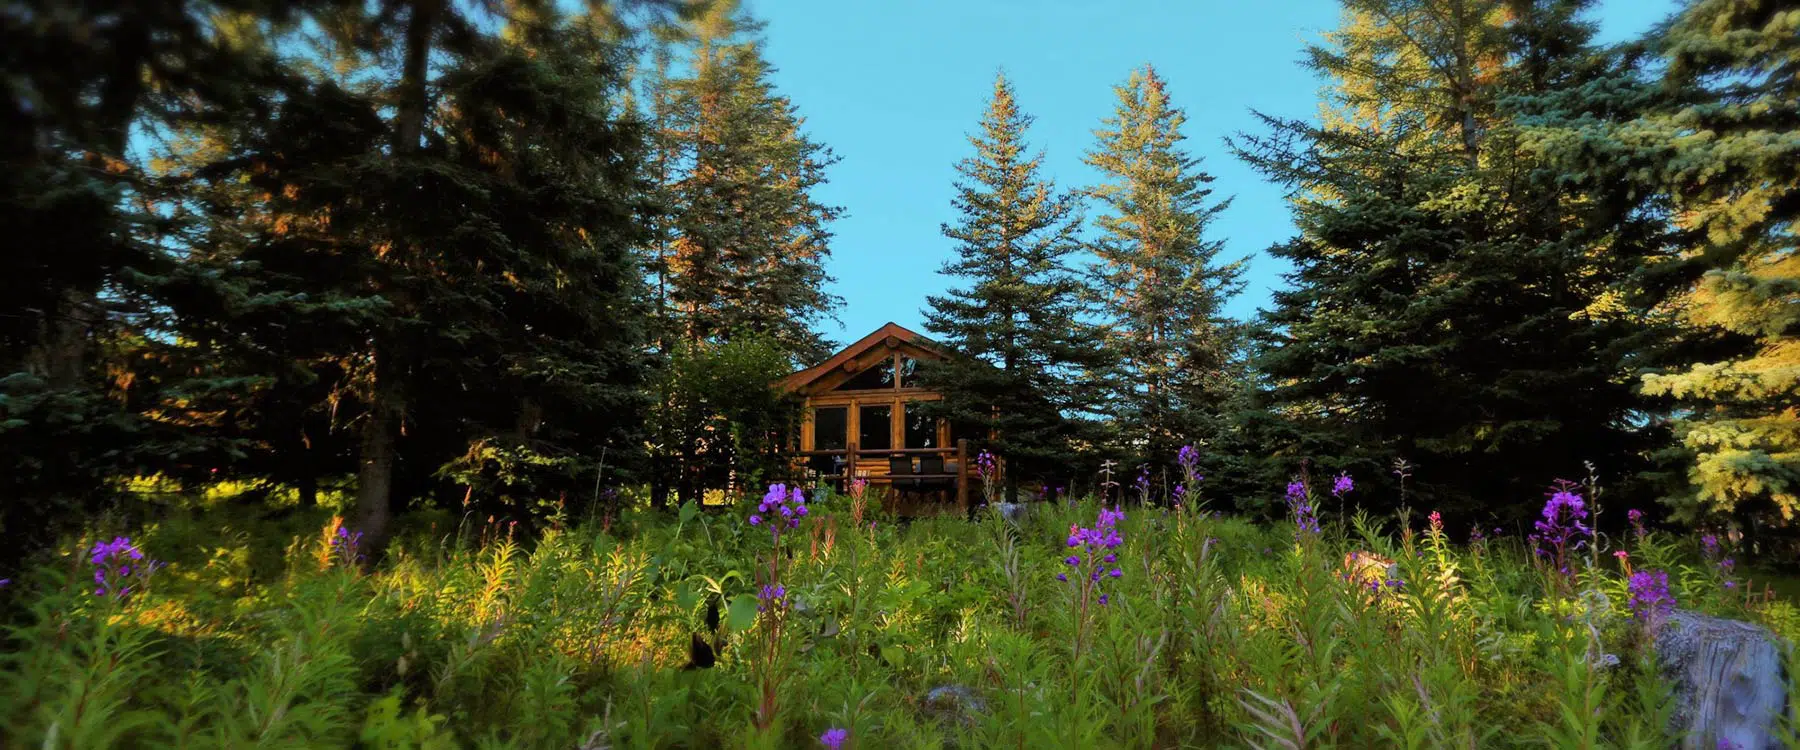 cabin in wildflowers